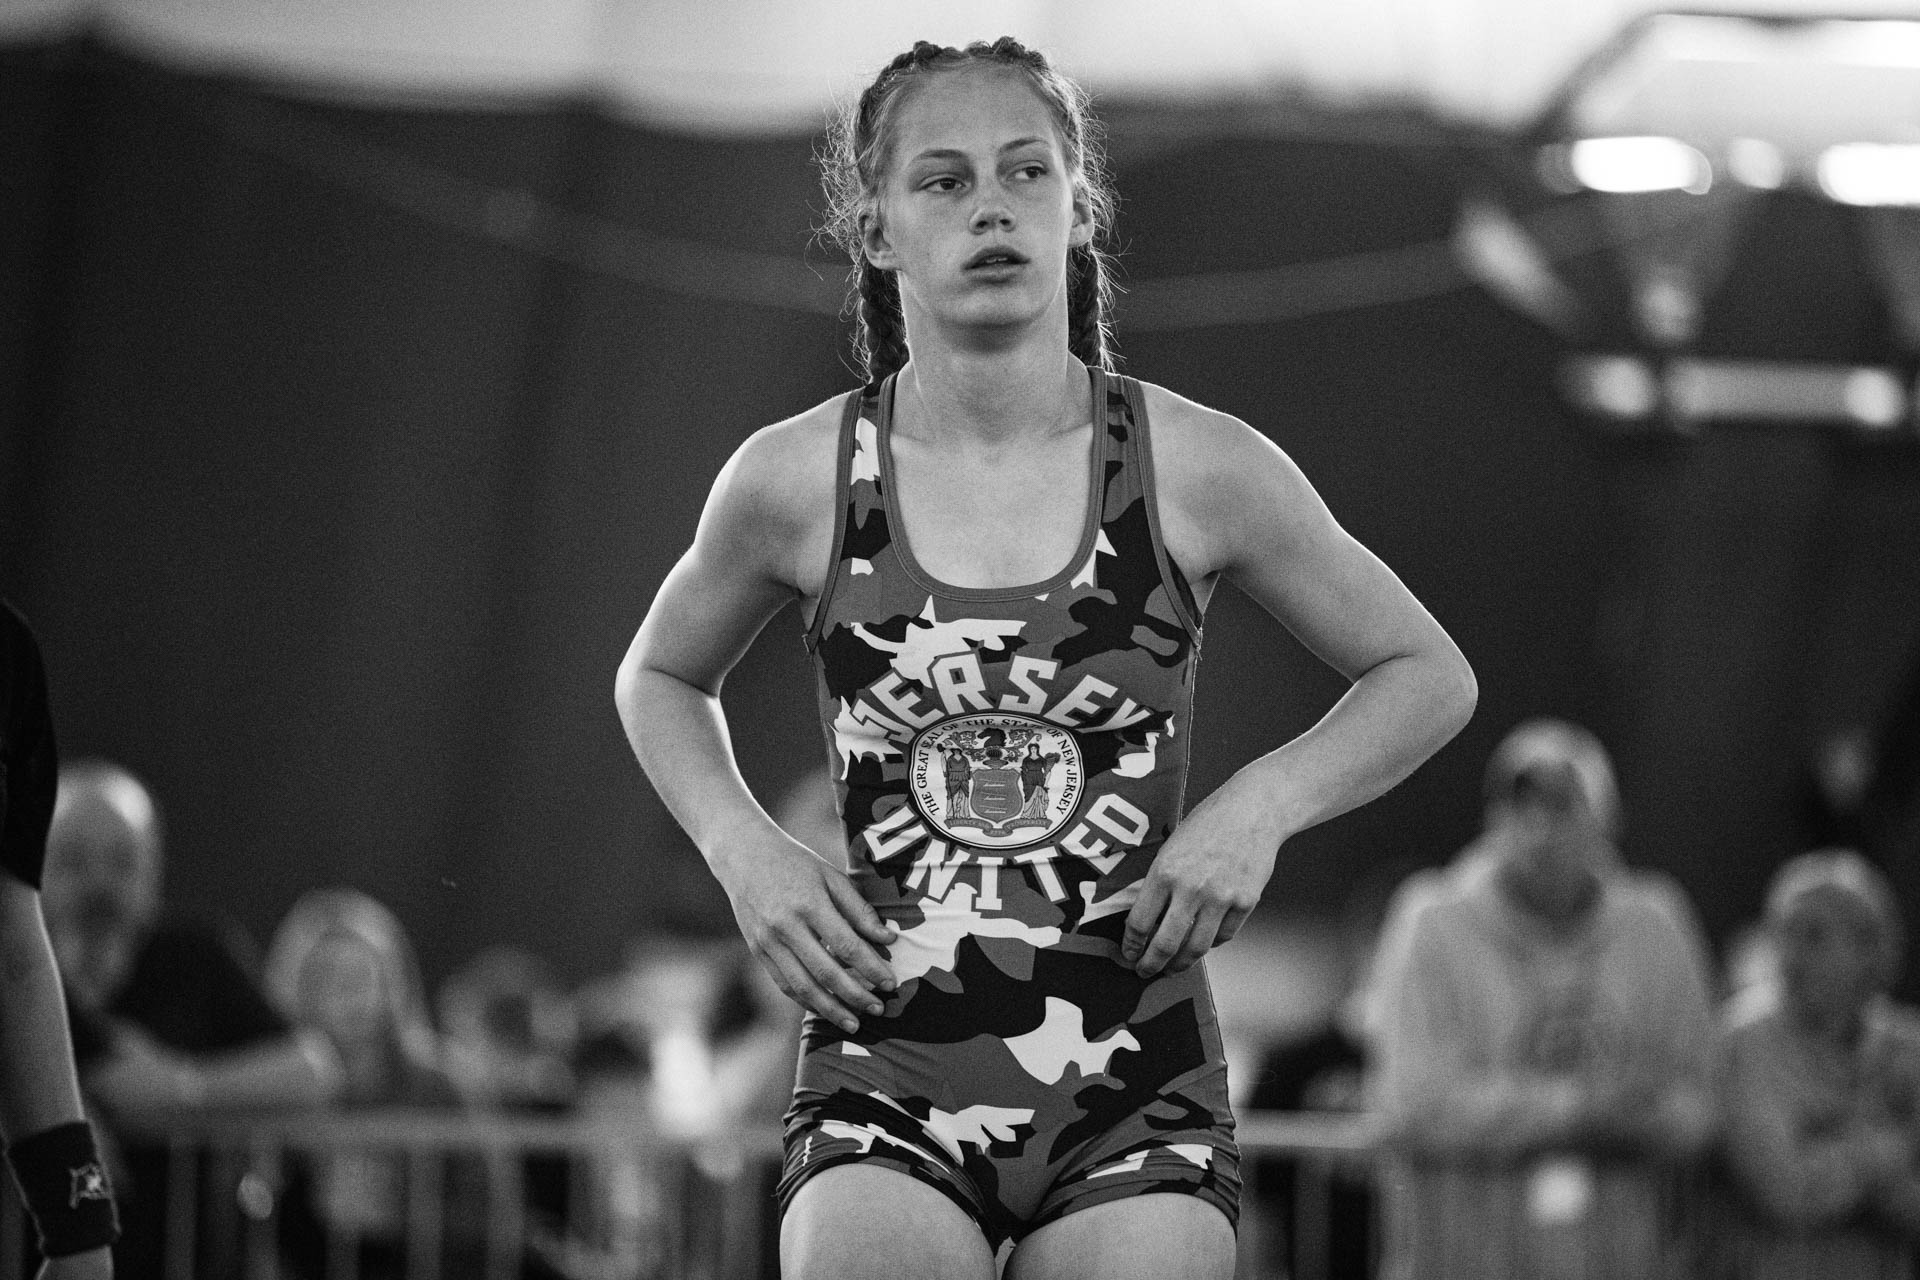 girls-wrestling-wisconsin-dells-state-tournament-sleznikow-aggressive-fierce-greco-travis-dewitz-2068.JPG